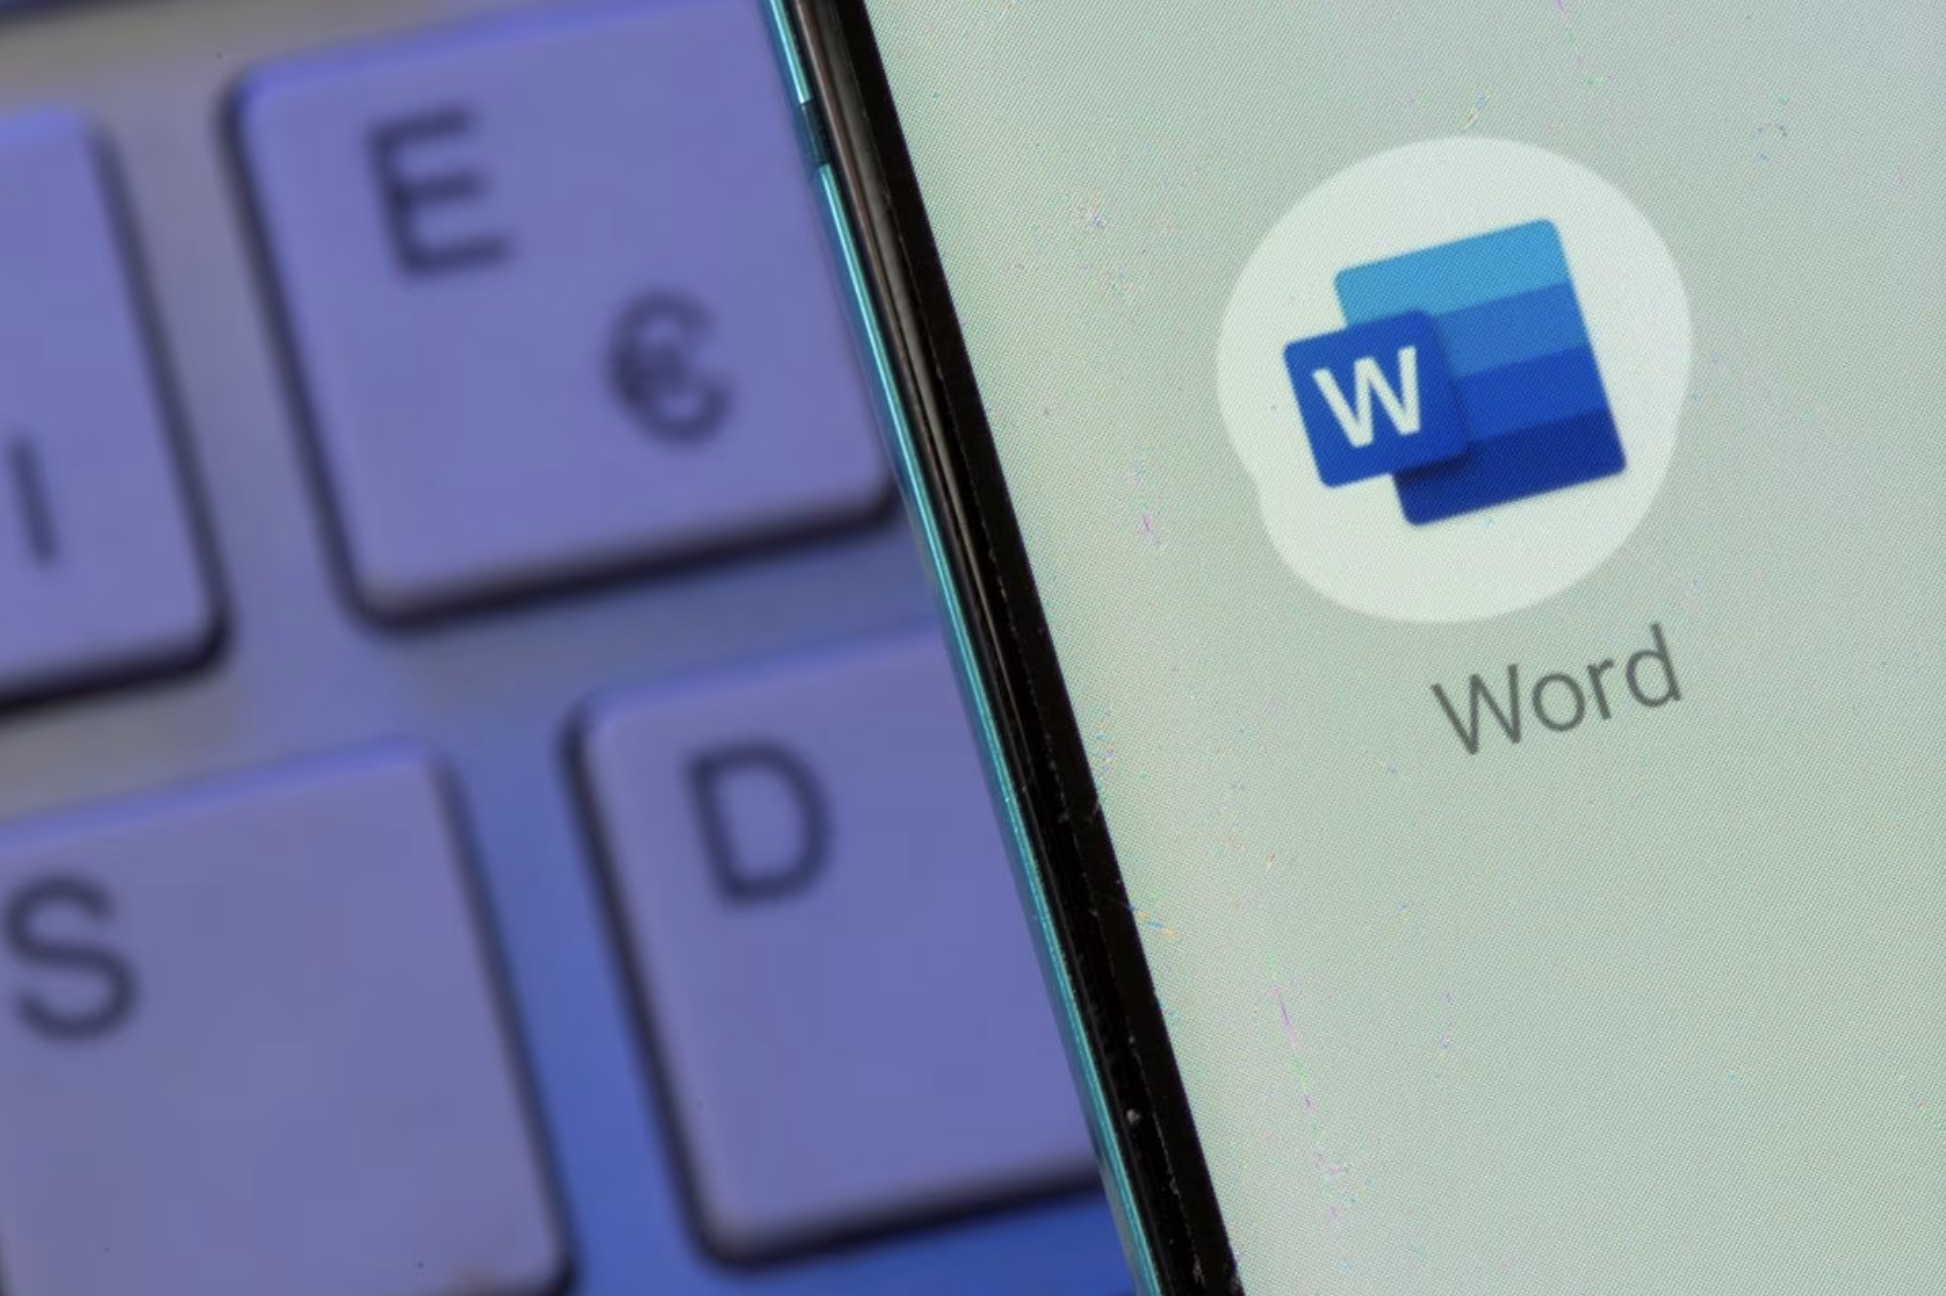 2021 年 7 月 26 日在智能手机上看到的 Microsoft Word 应用程序图像。/路透社